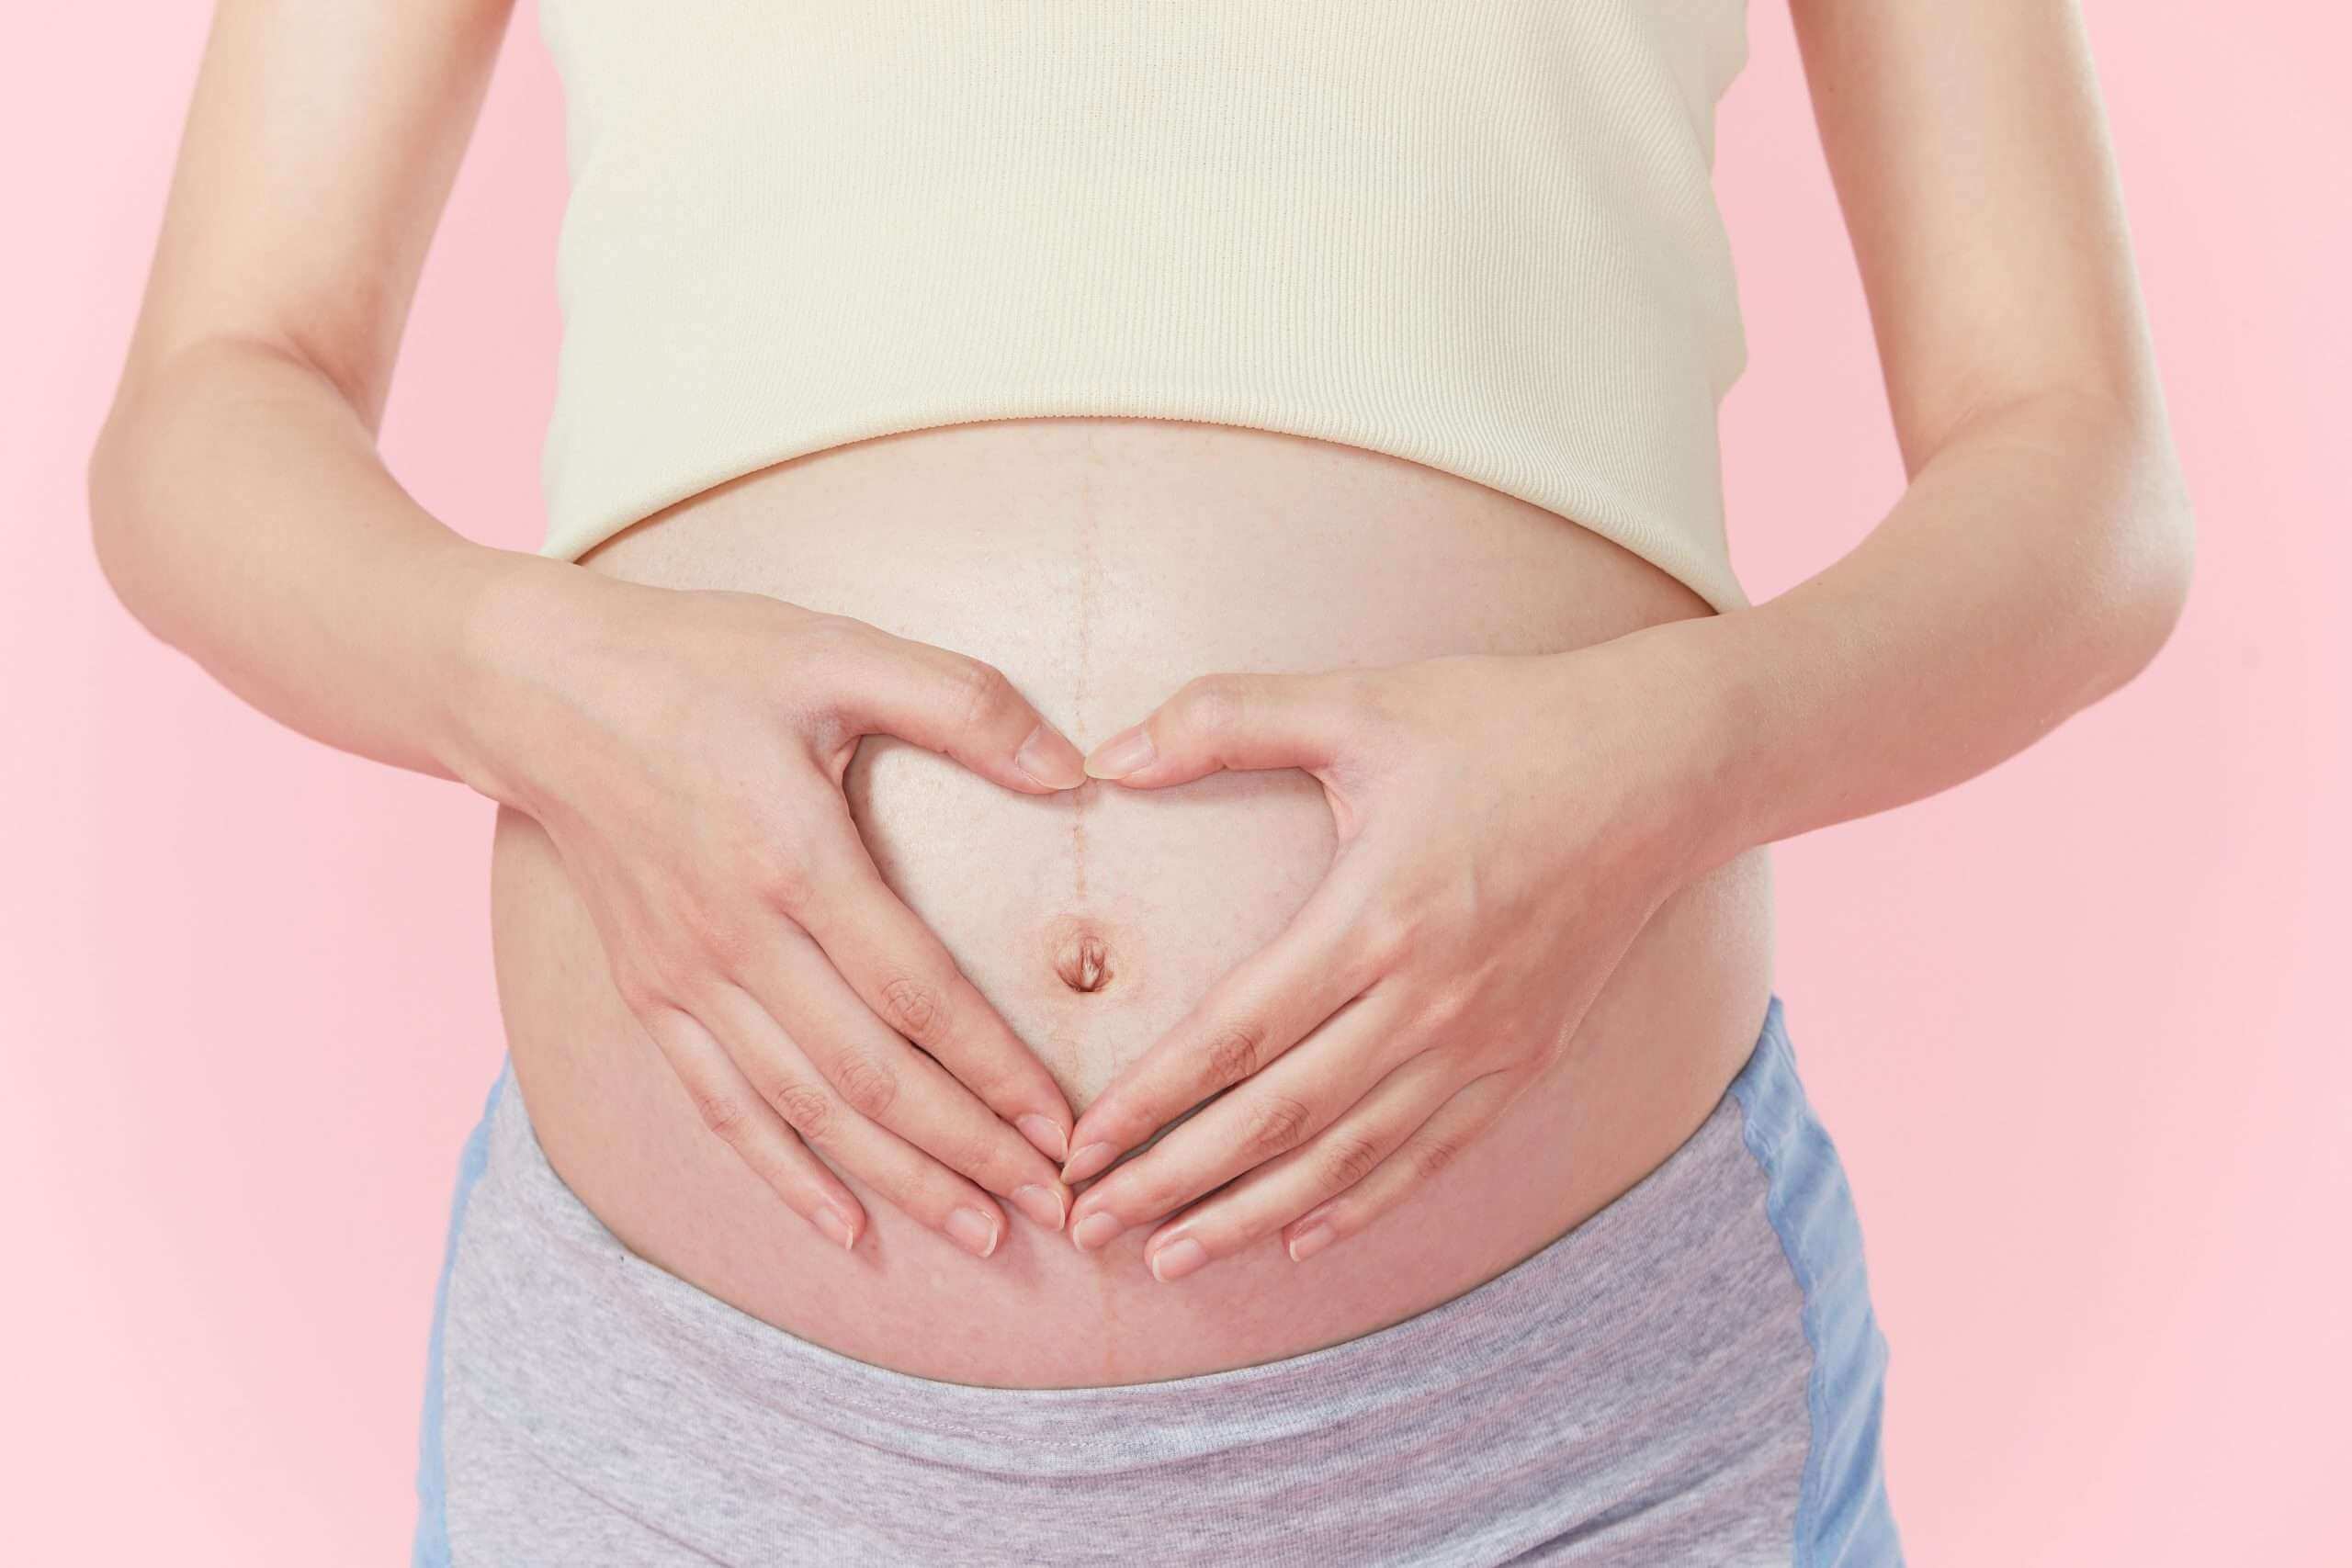 tâm lý phụ nữ khi mang thai thay đổi như thế nào?